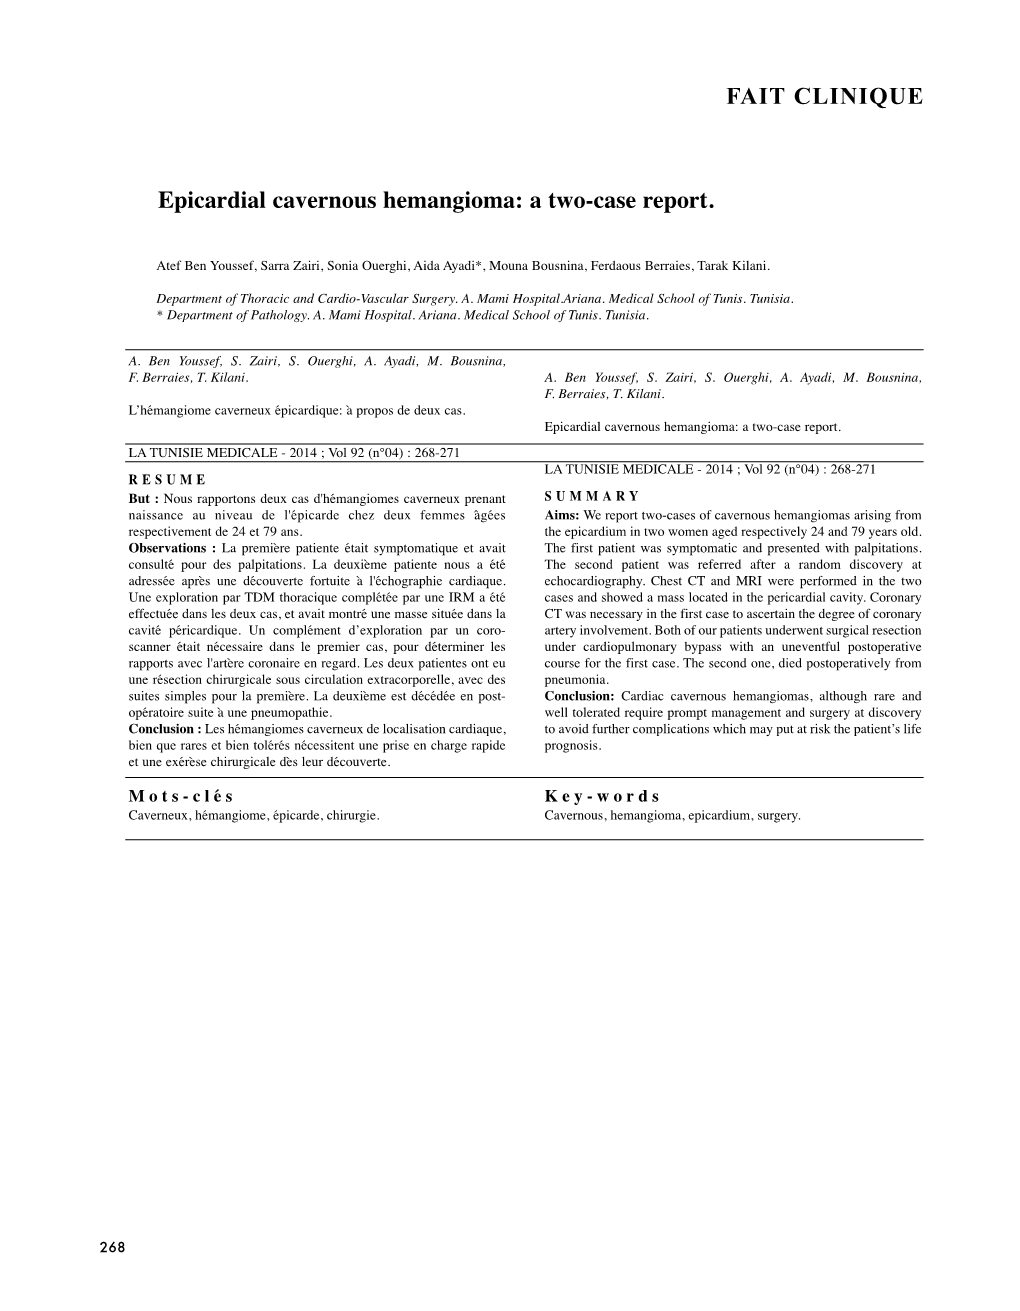 Epicardial Cavernous Hemangioma: a Two-Case Report. FAIT CLINIQUE